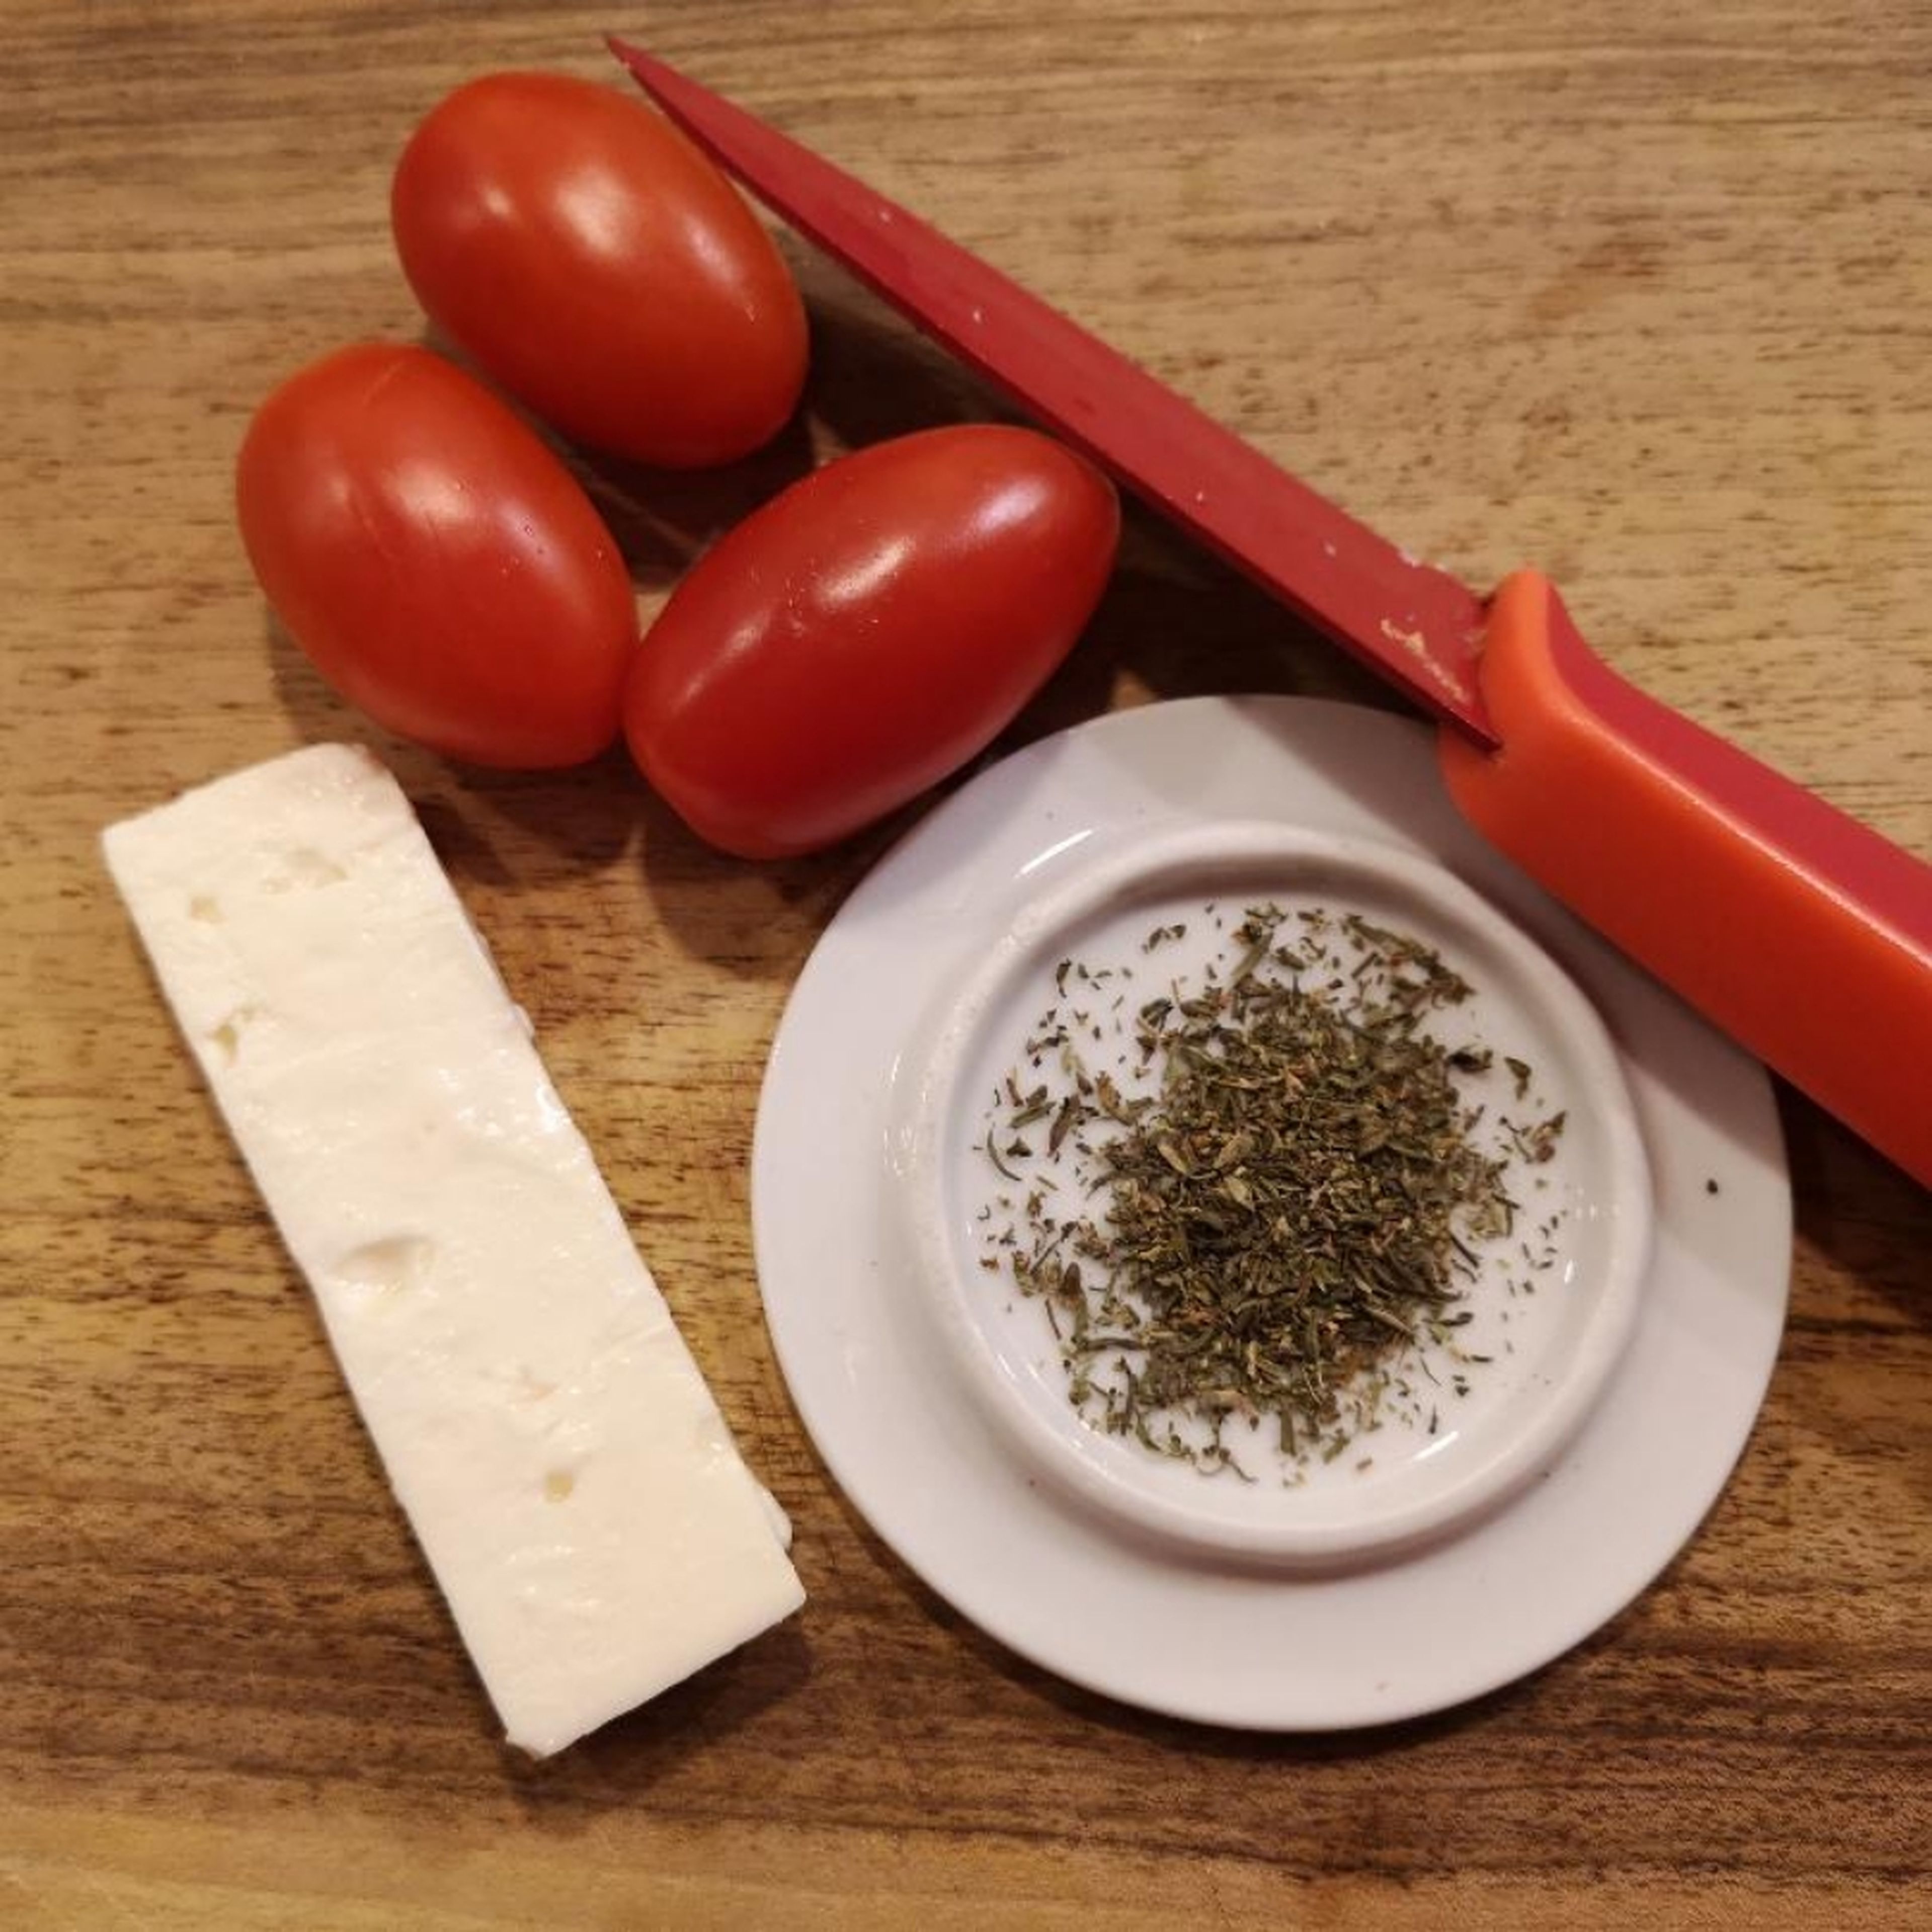 Die Tomaten halbieren, mit Kräuter bestäuben, ein kleines Quadrat von Feta darauf. Eventuell mit Salz und Pfeffer würzen. Dann im Backrohr bei 220 Grad Ober-/Unterhitze einige Minuten backen.